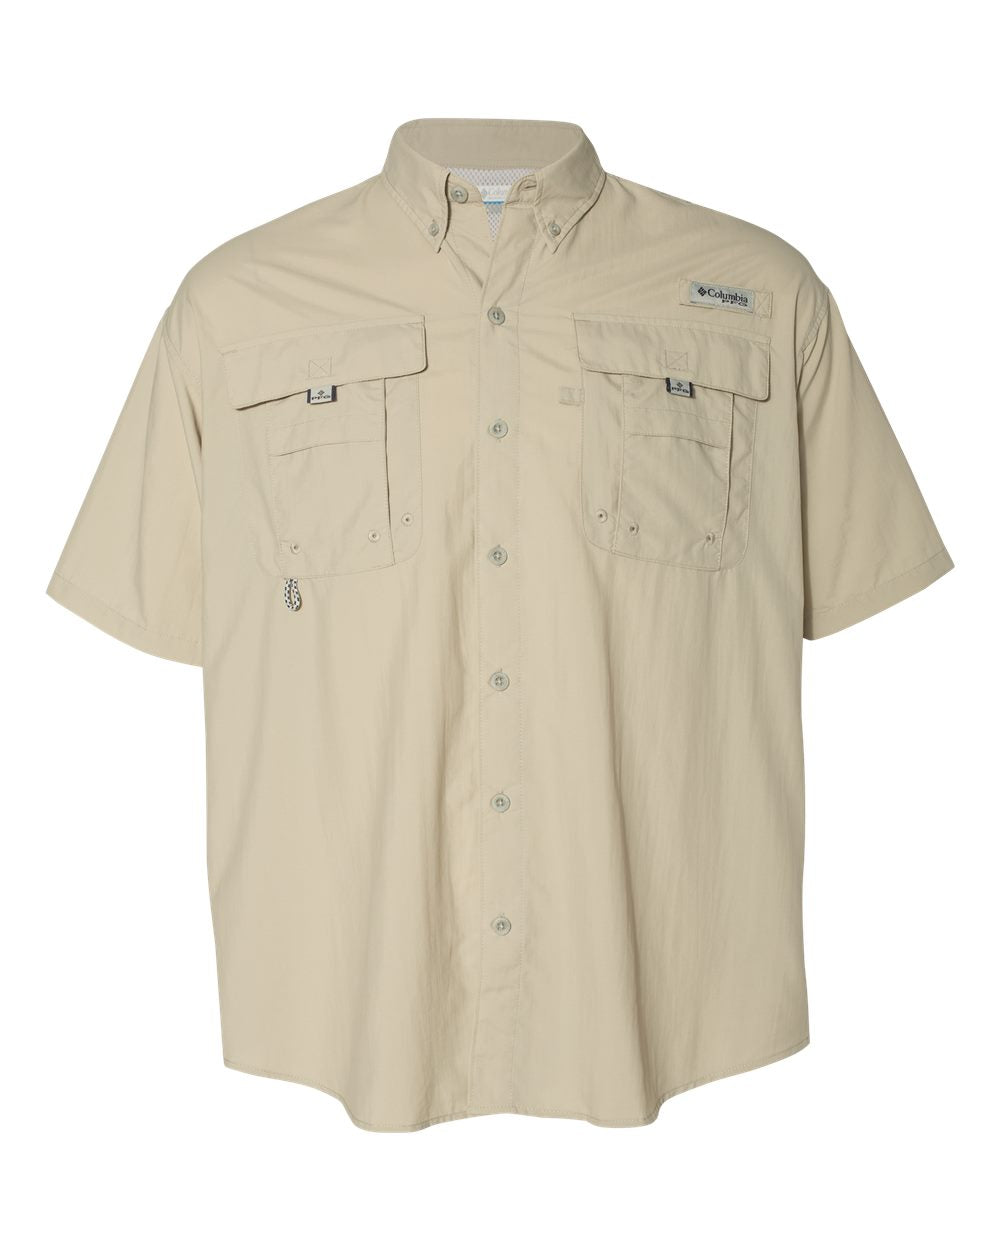 Columbia Bahama II Short Sleeve Shirt - Men's Fossil / XL